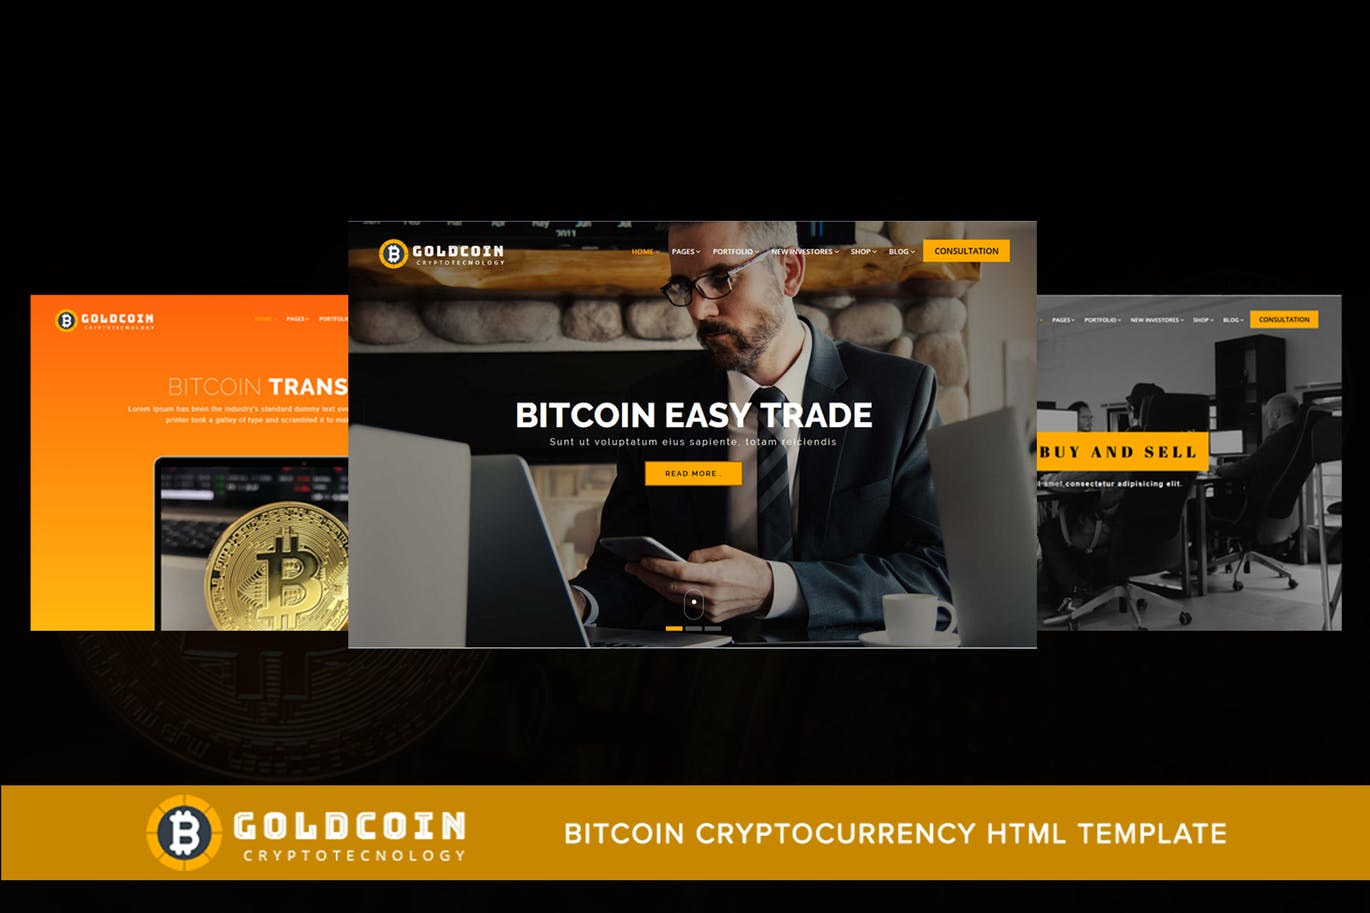 比特币加密货币主题网站HTML模板蚂蚁素材精选 GoldCoin – Bitcoin Cryptocurrency HTML Template插图